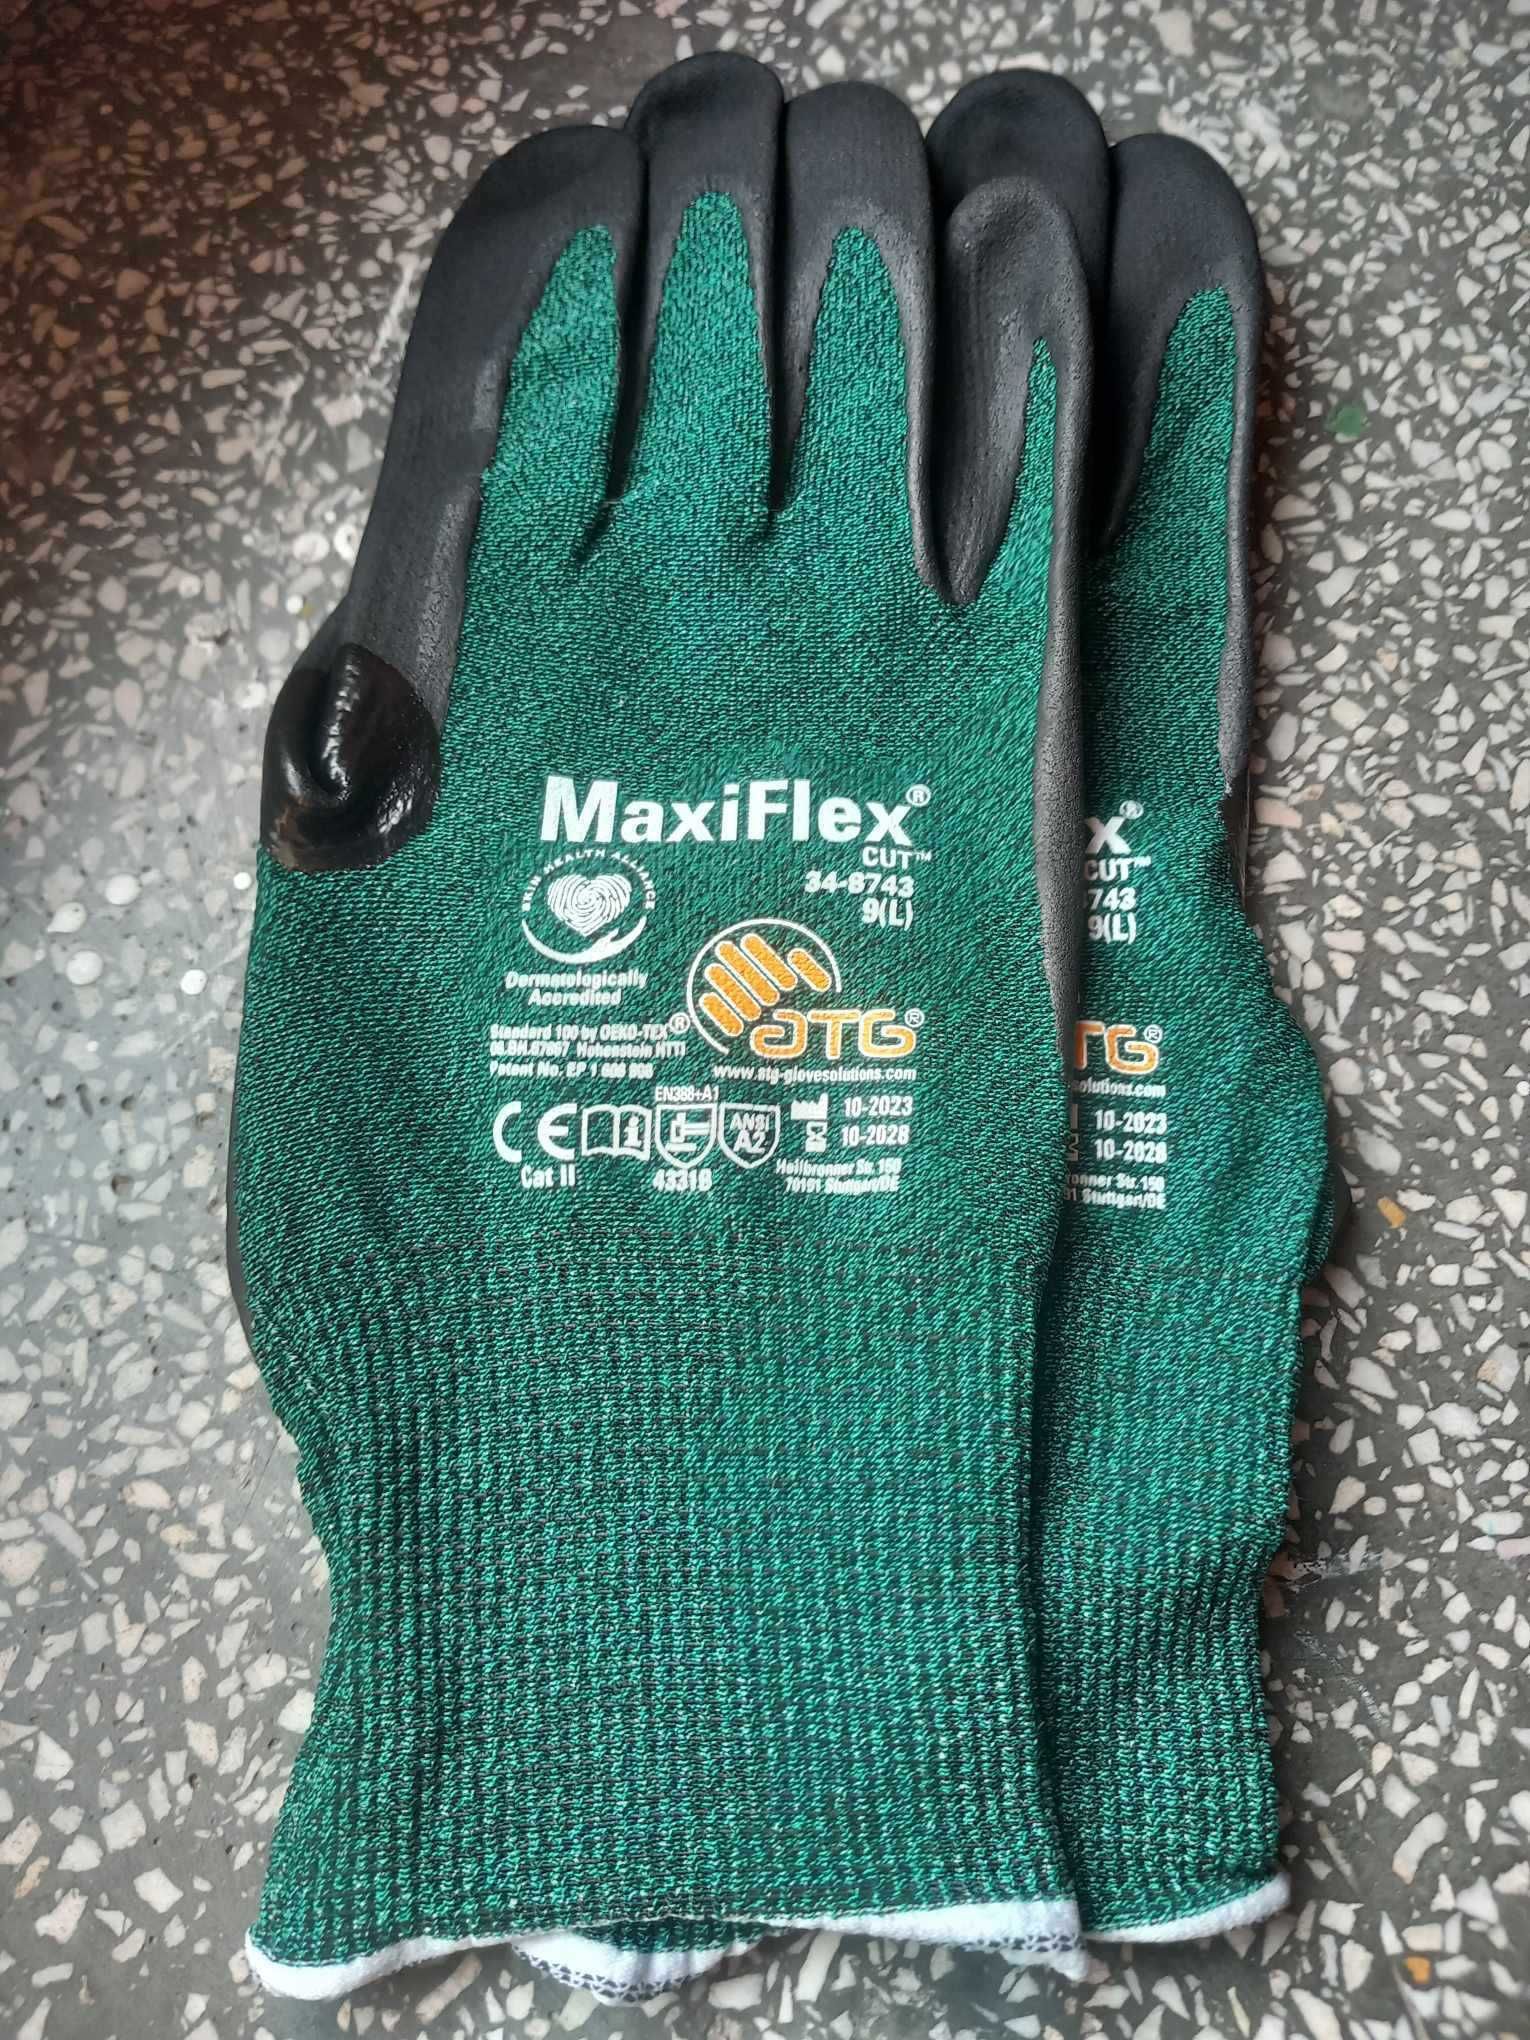 Rękawiczki ATG   Maxiflex rozmiar 8,9